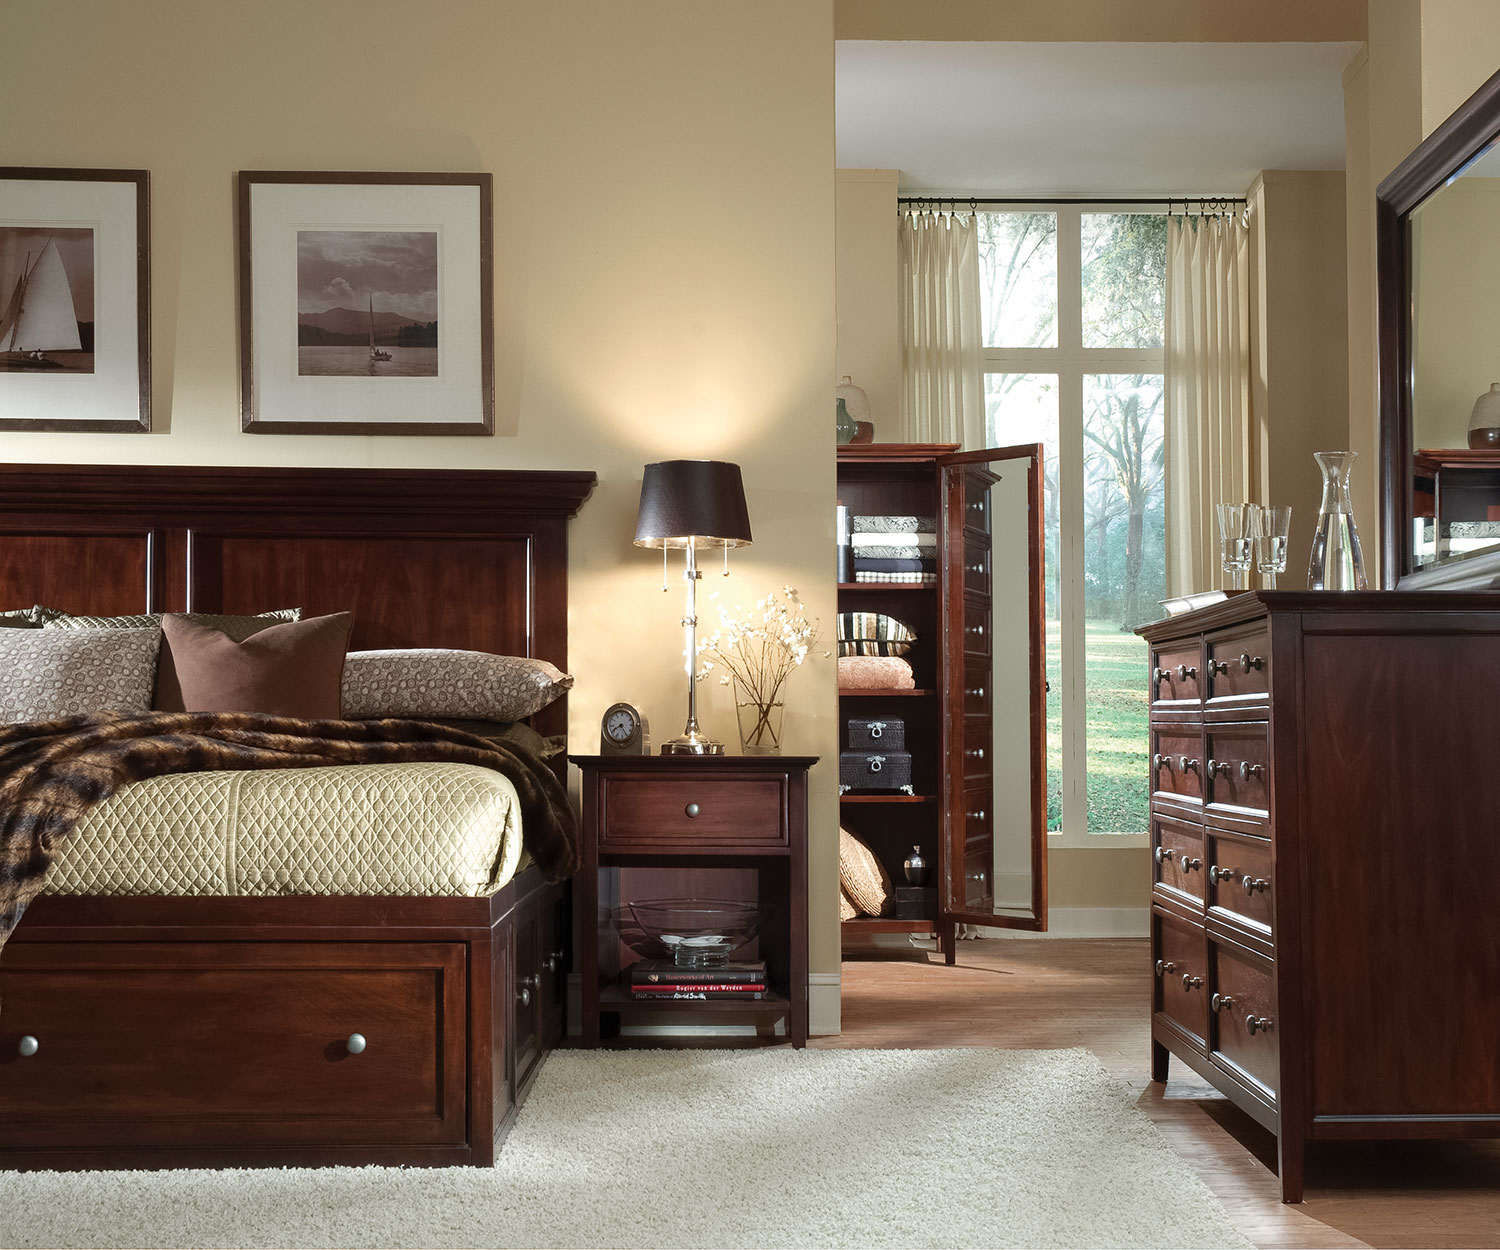 mealey's bedroom furniture set